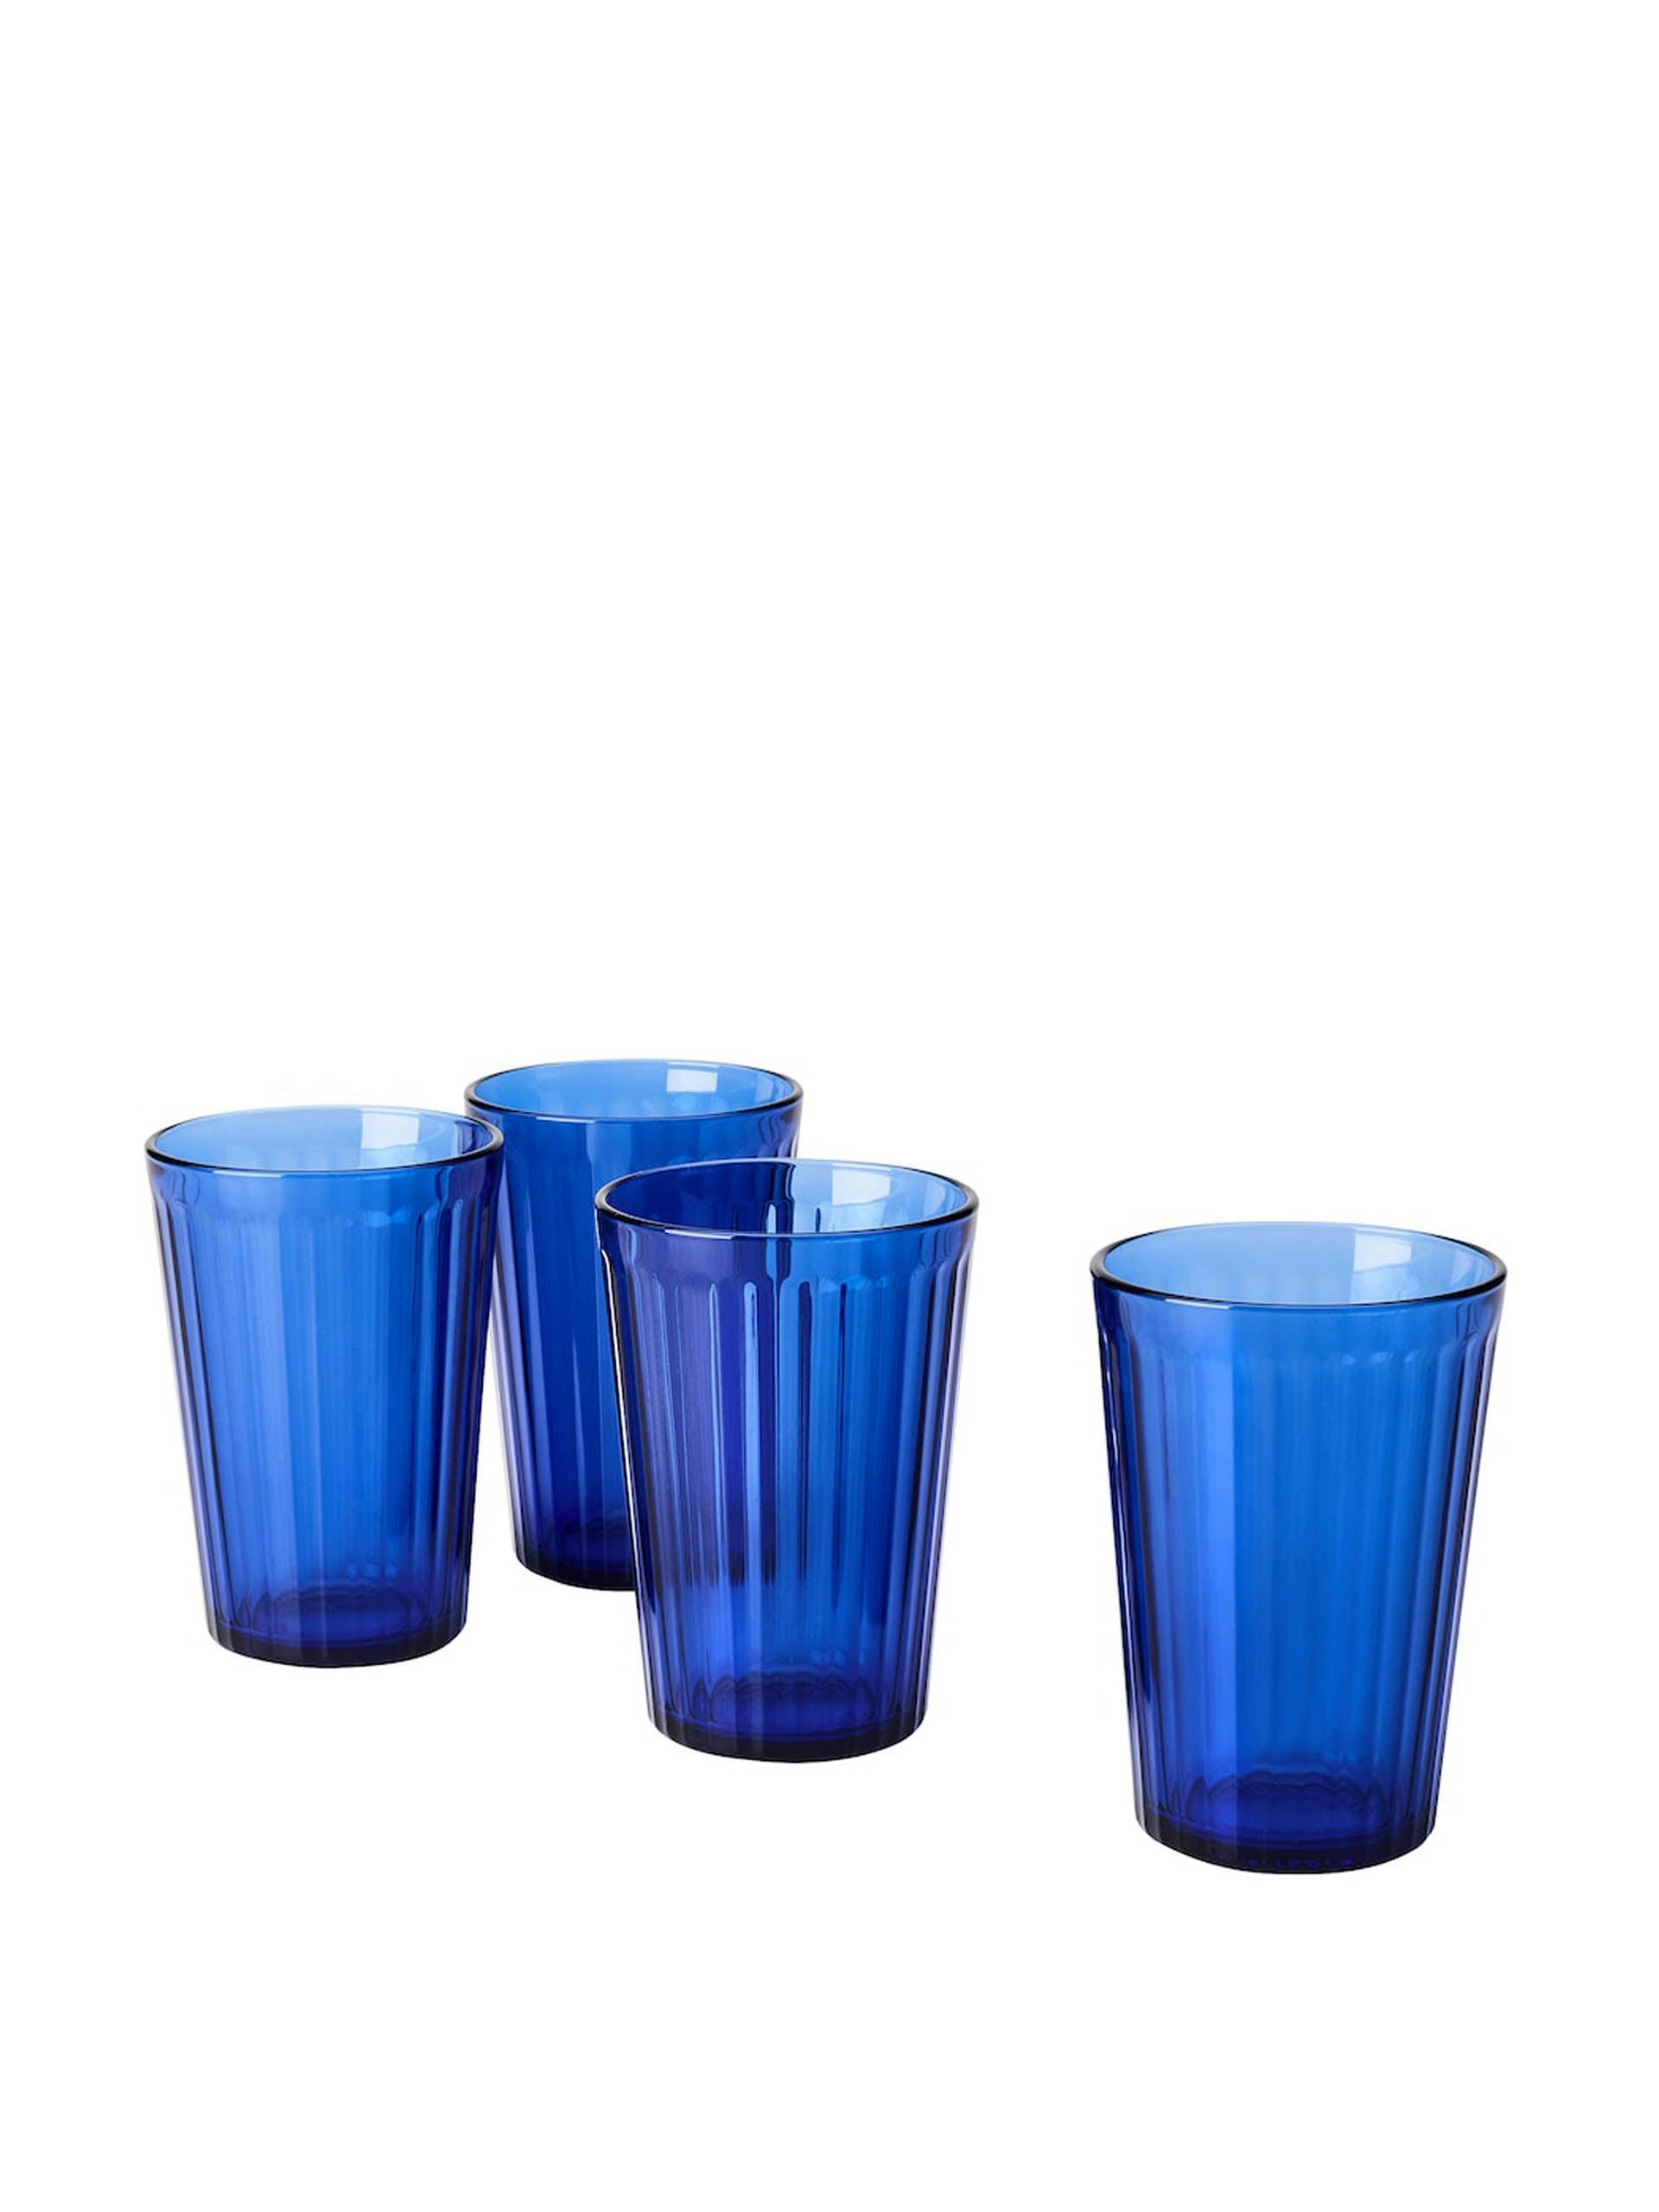 Blue glass tumblers (set of 4)